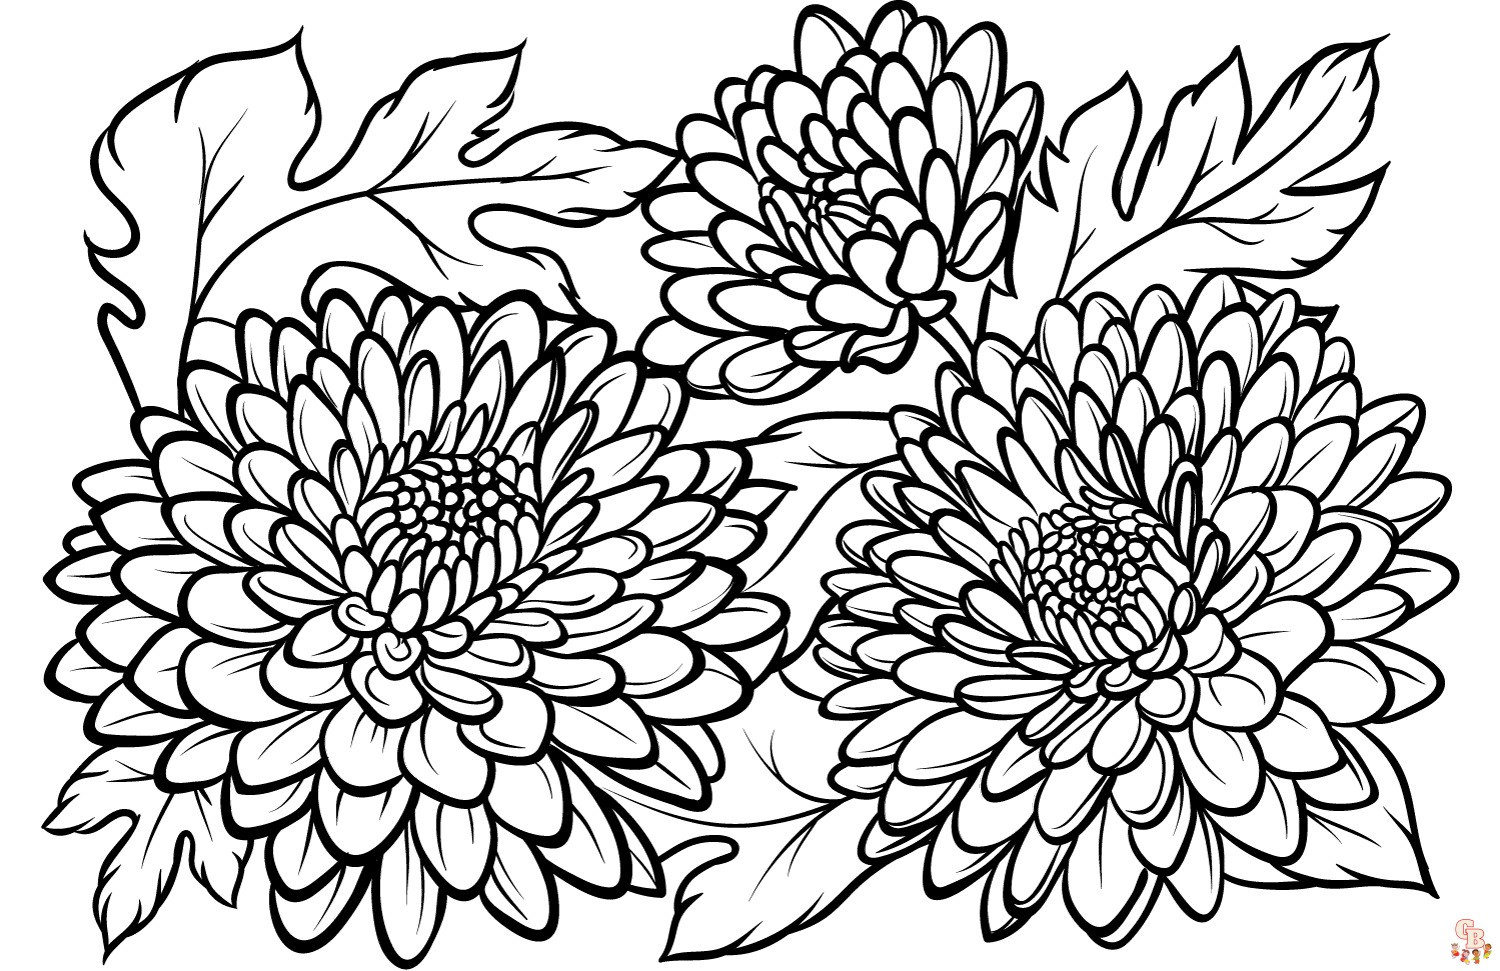 Chrysanthemen ausmalbilder zum ausdrucken